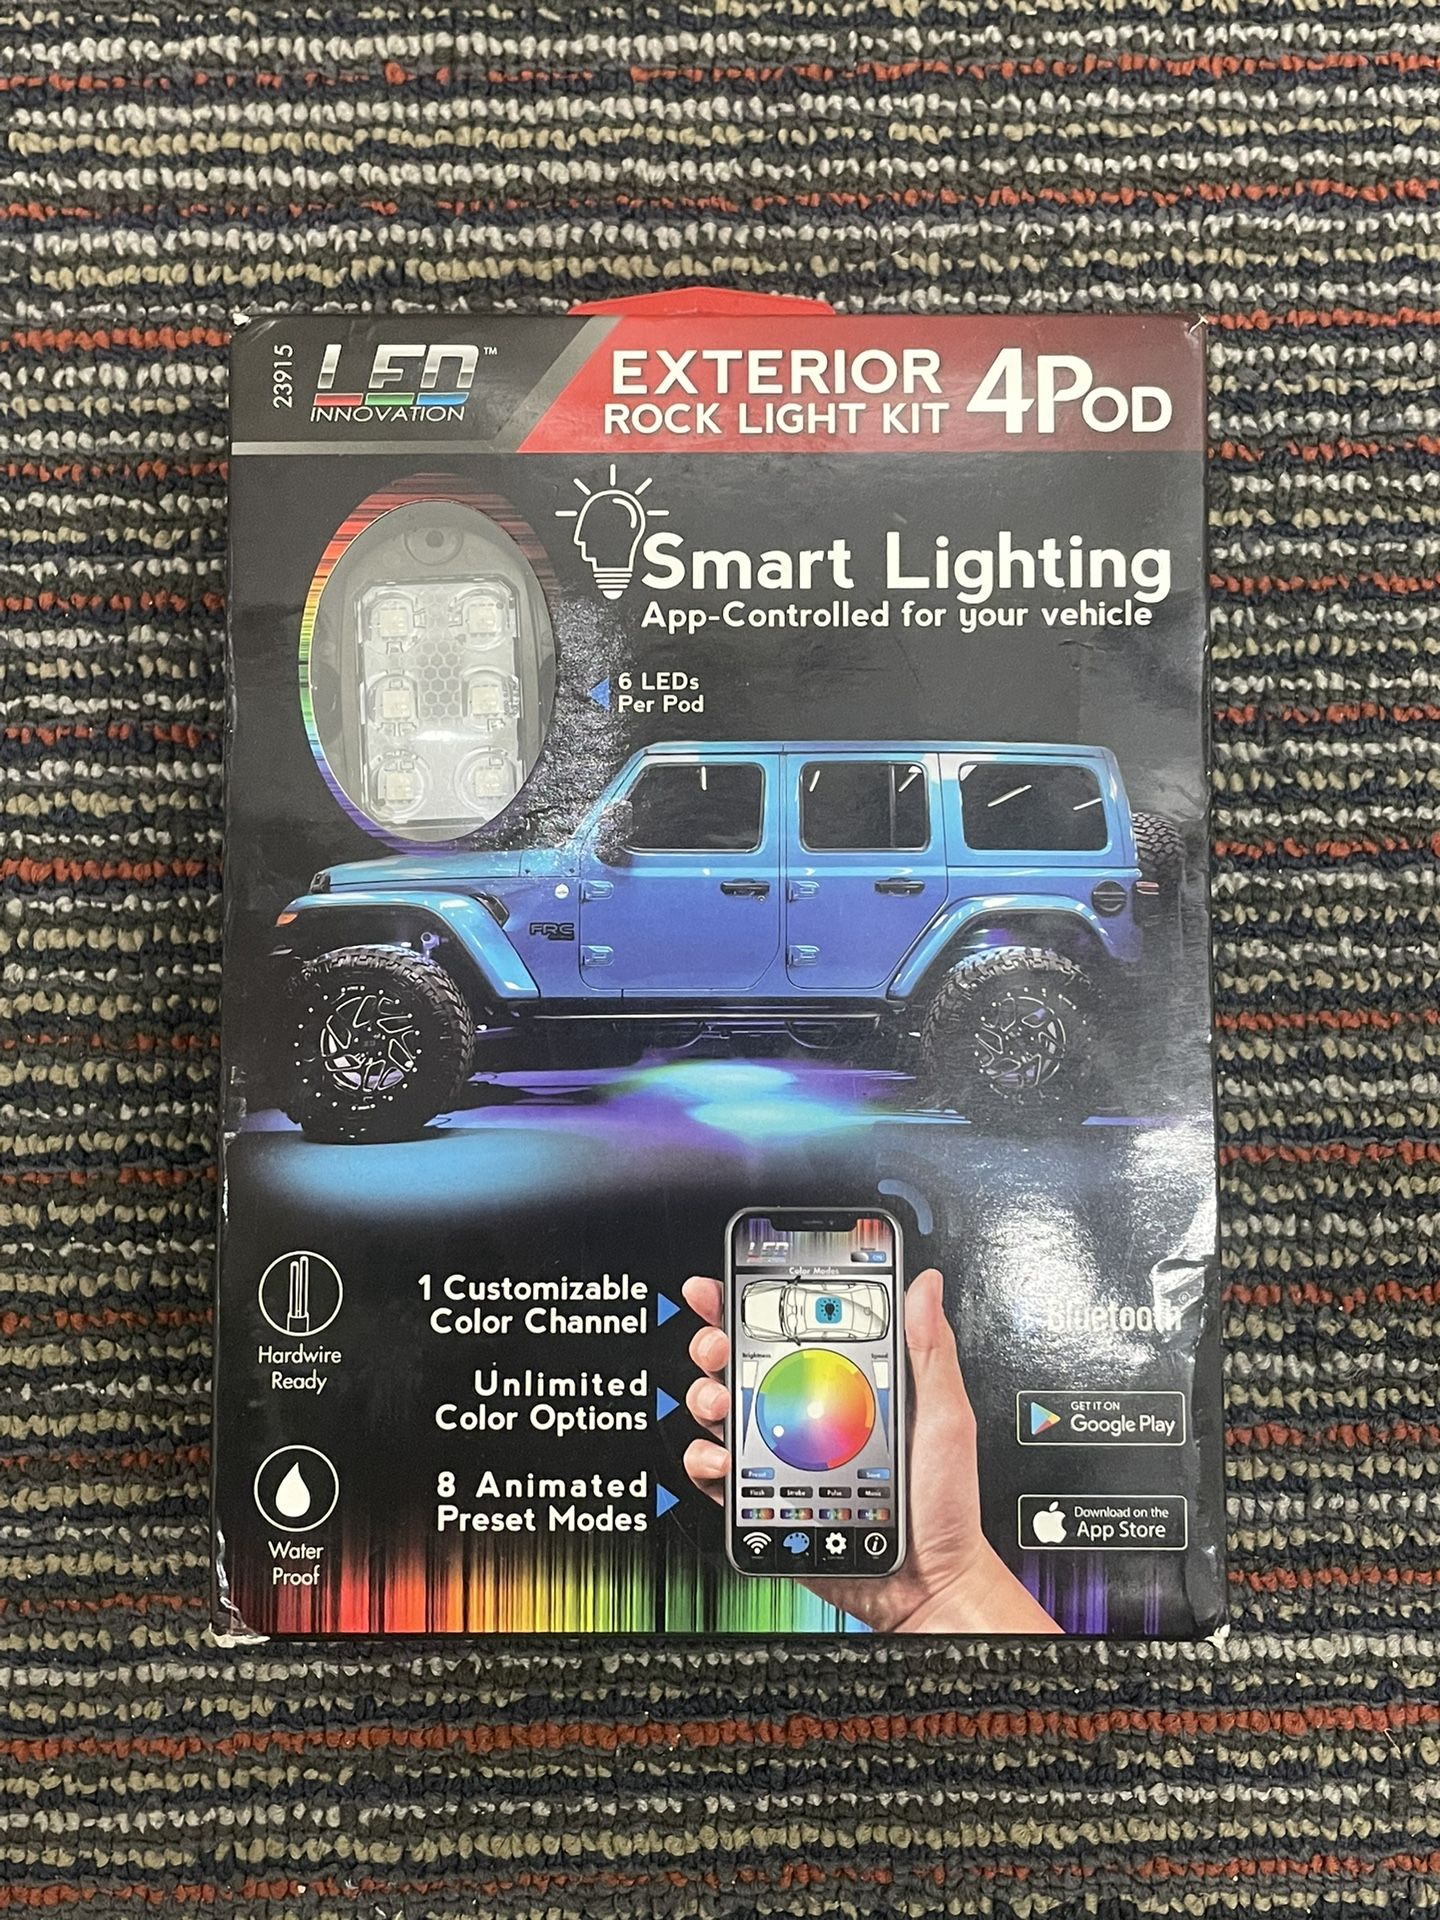 LED Innovation EXTERIOR 4POD ROCK LIGHT KIT smart Lighting